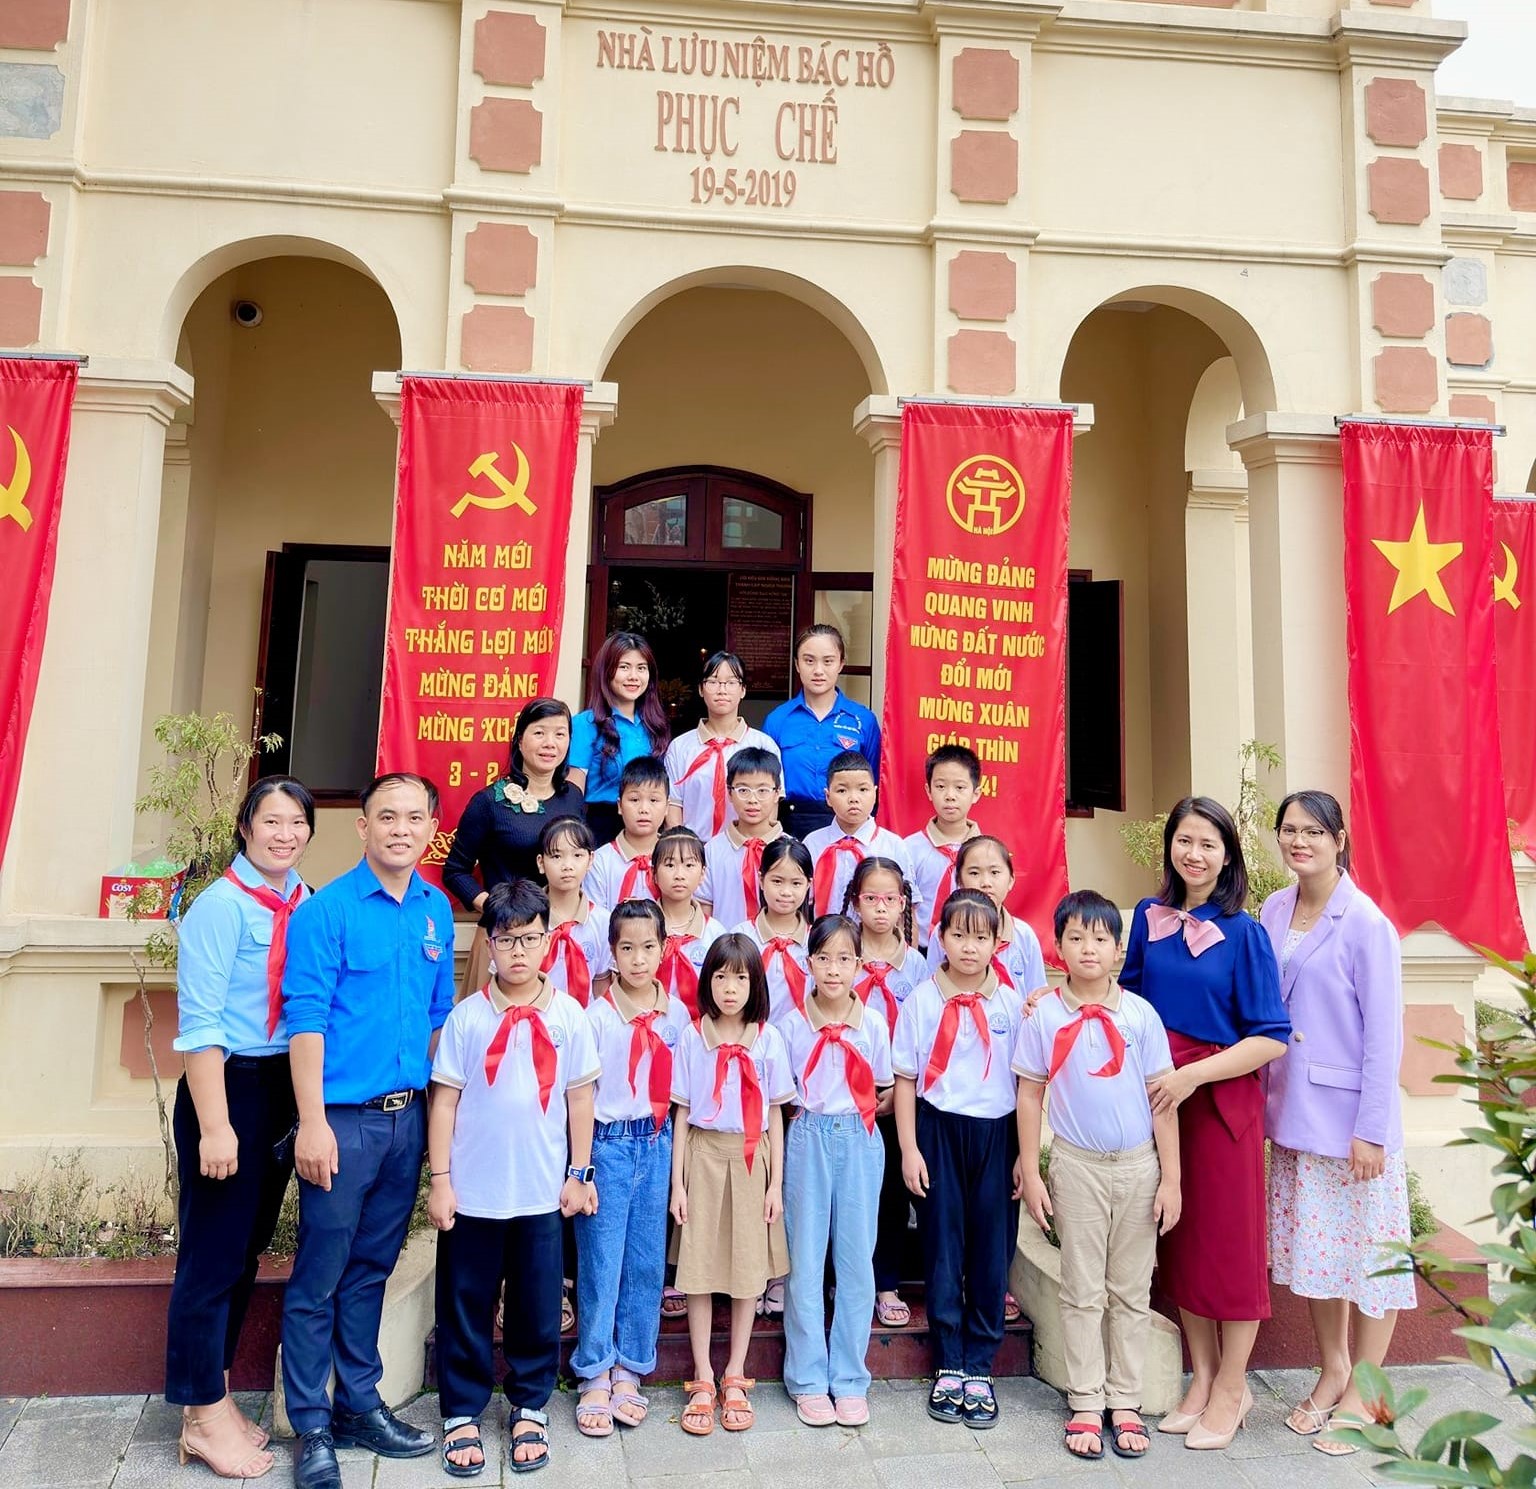 Chào mừng 93 năm ngày thành lập Đoàn thanh niên Cộng sản Hồ Chí Minh (26/3/1831-26/3/2024) 